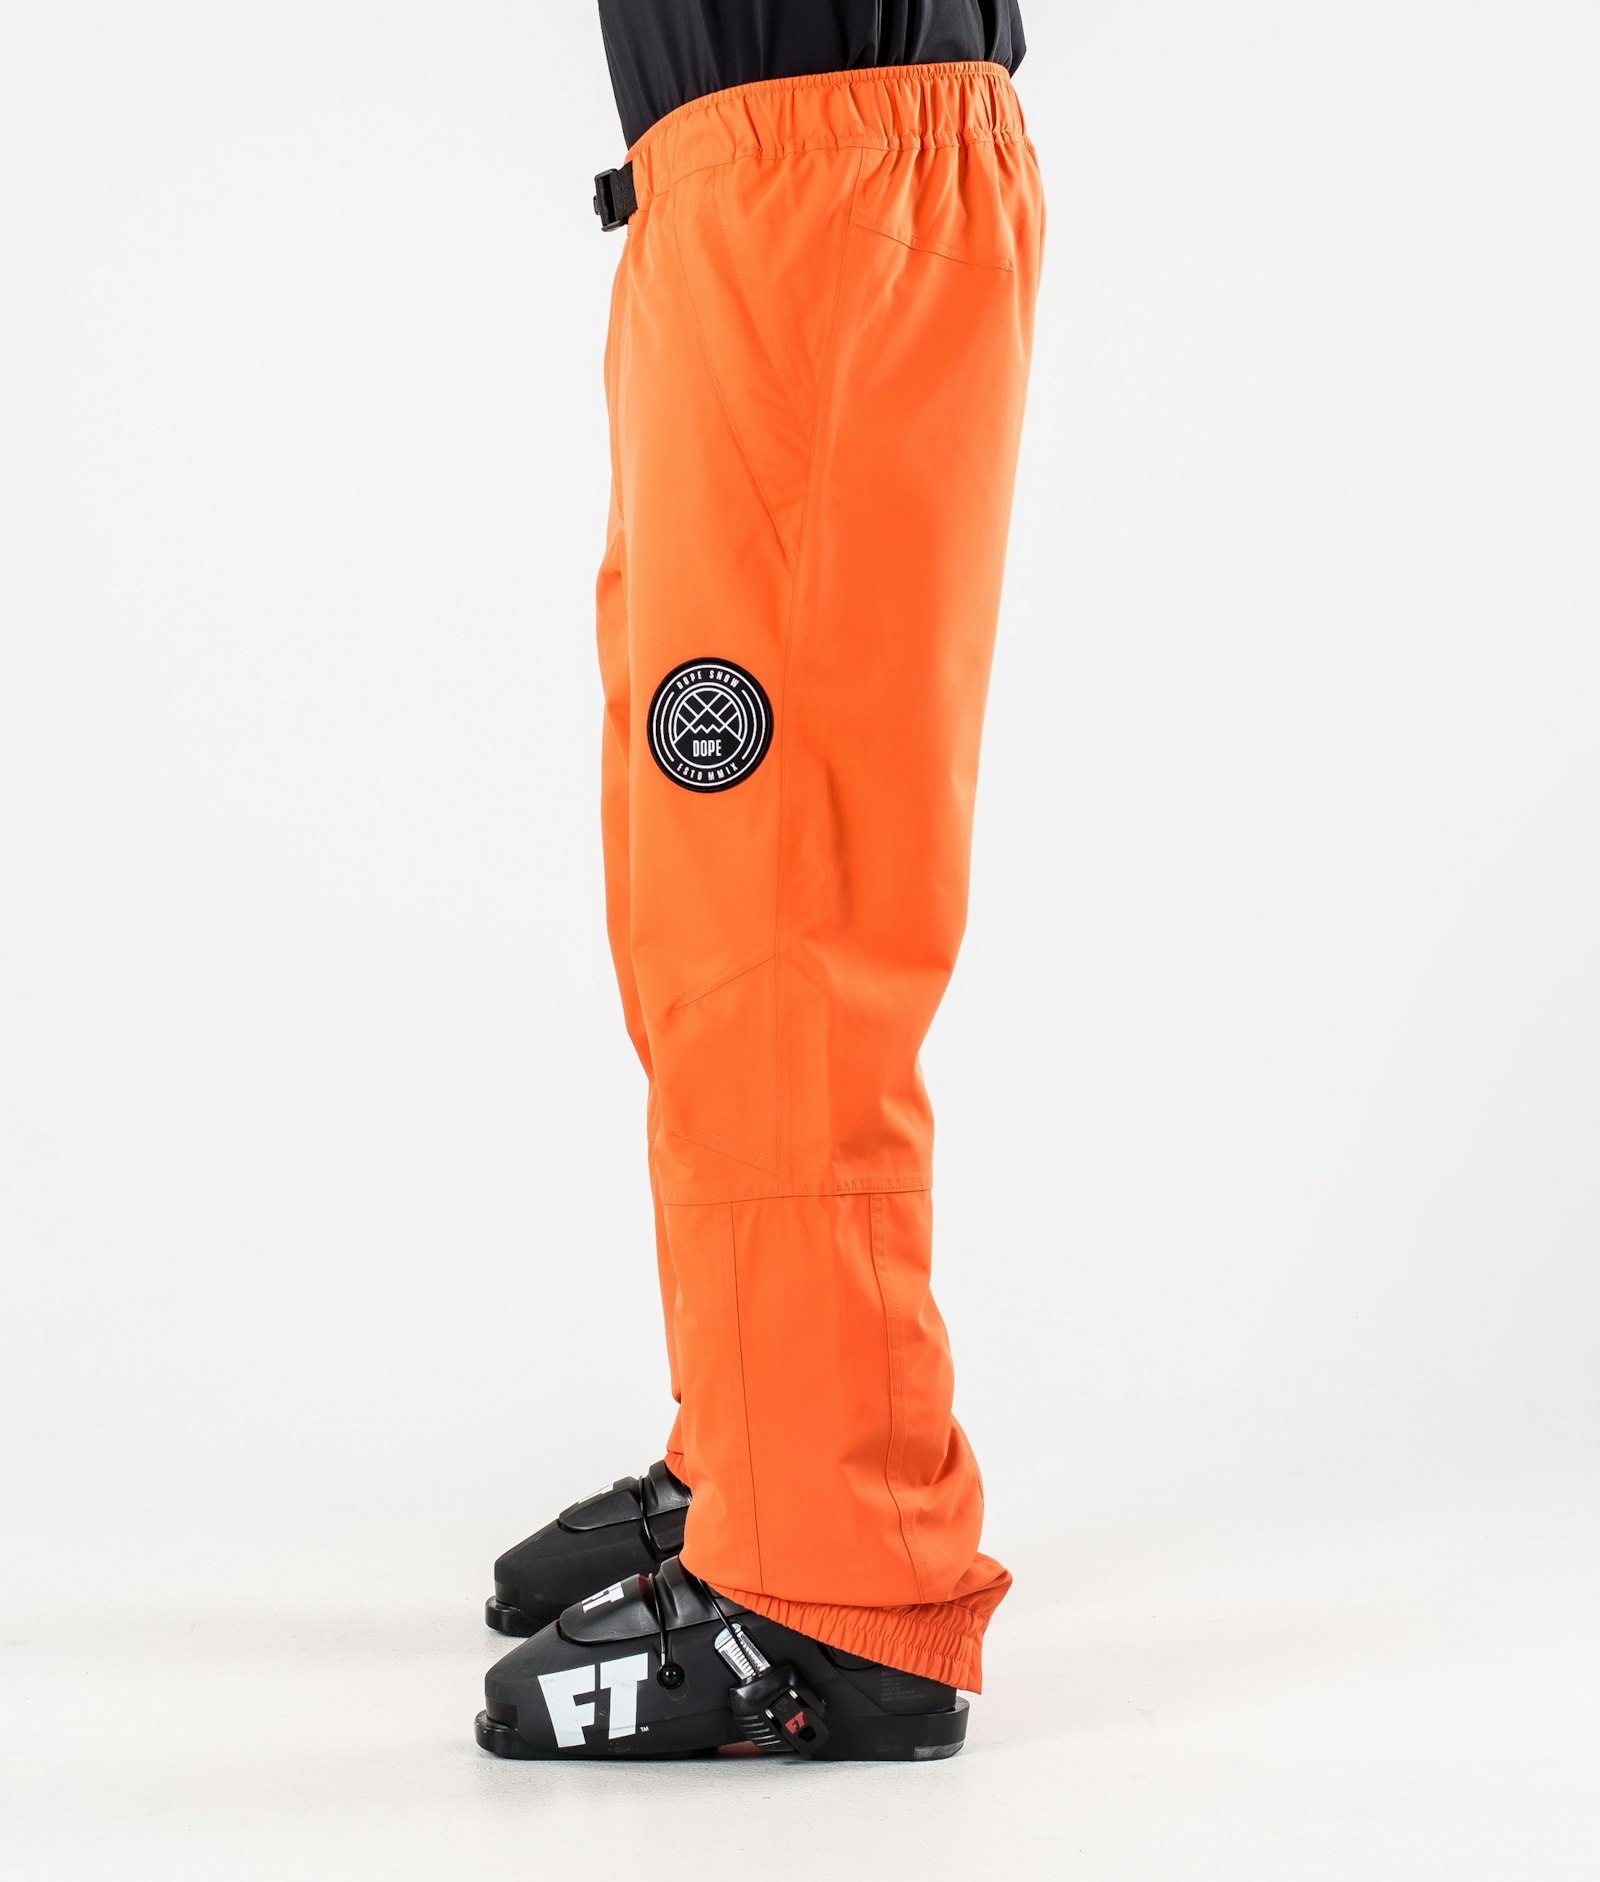 Blizzard 2020 Ski Pants Men Orange